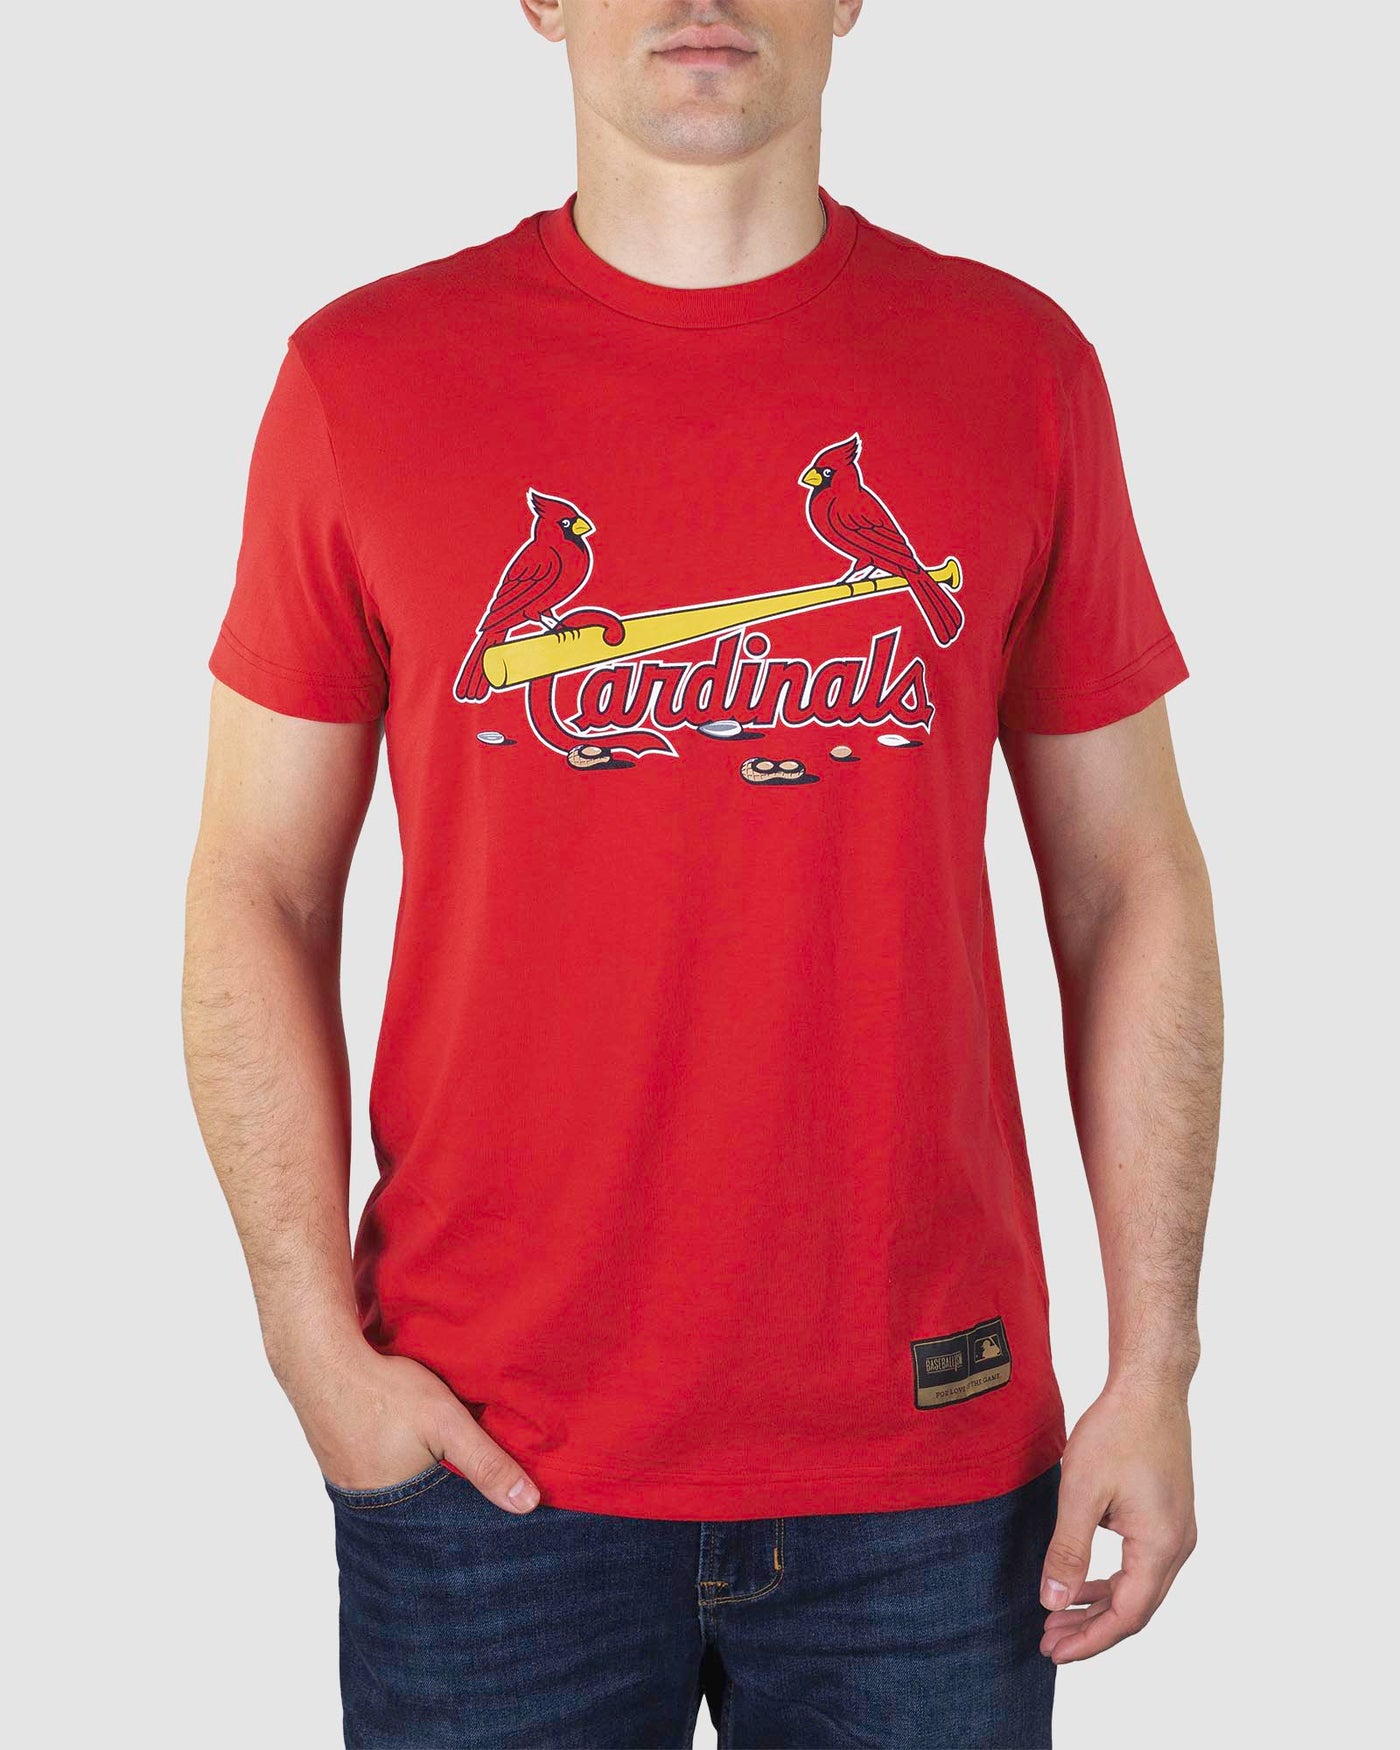 St. Louis Cardinals baseball Swim trunks Size XL